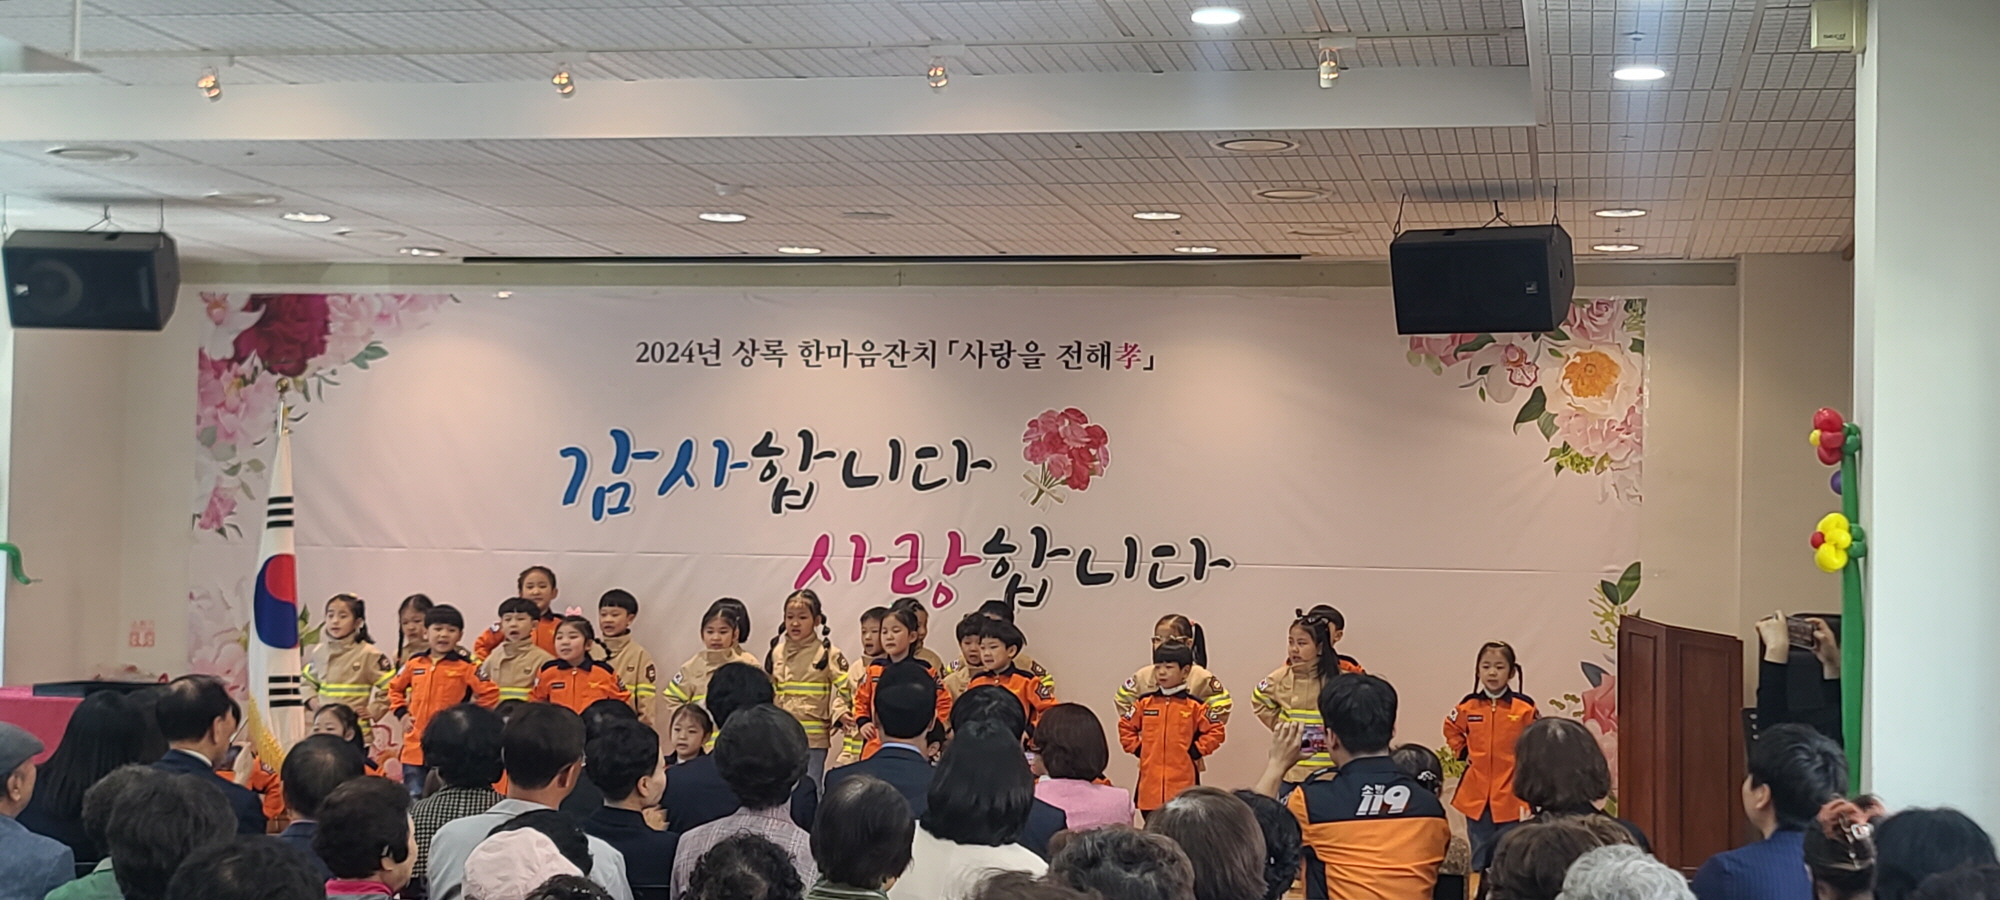 안산시, 제52회 어버이날 기념행사 개최…“복지 증진 최선 노력”